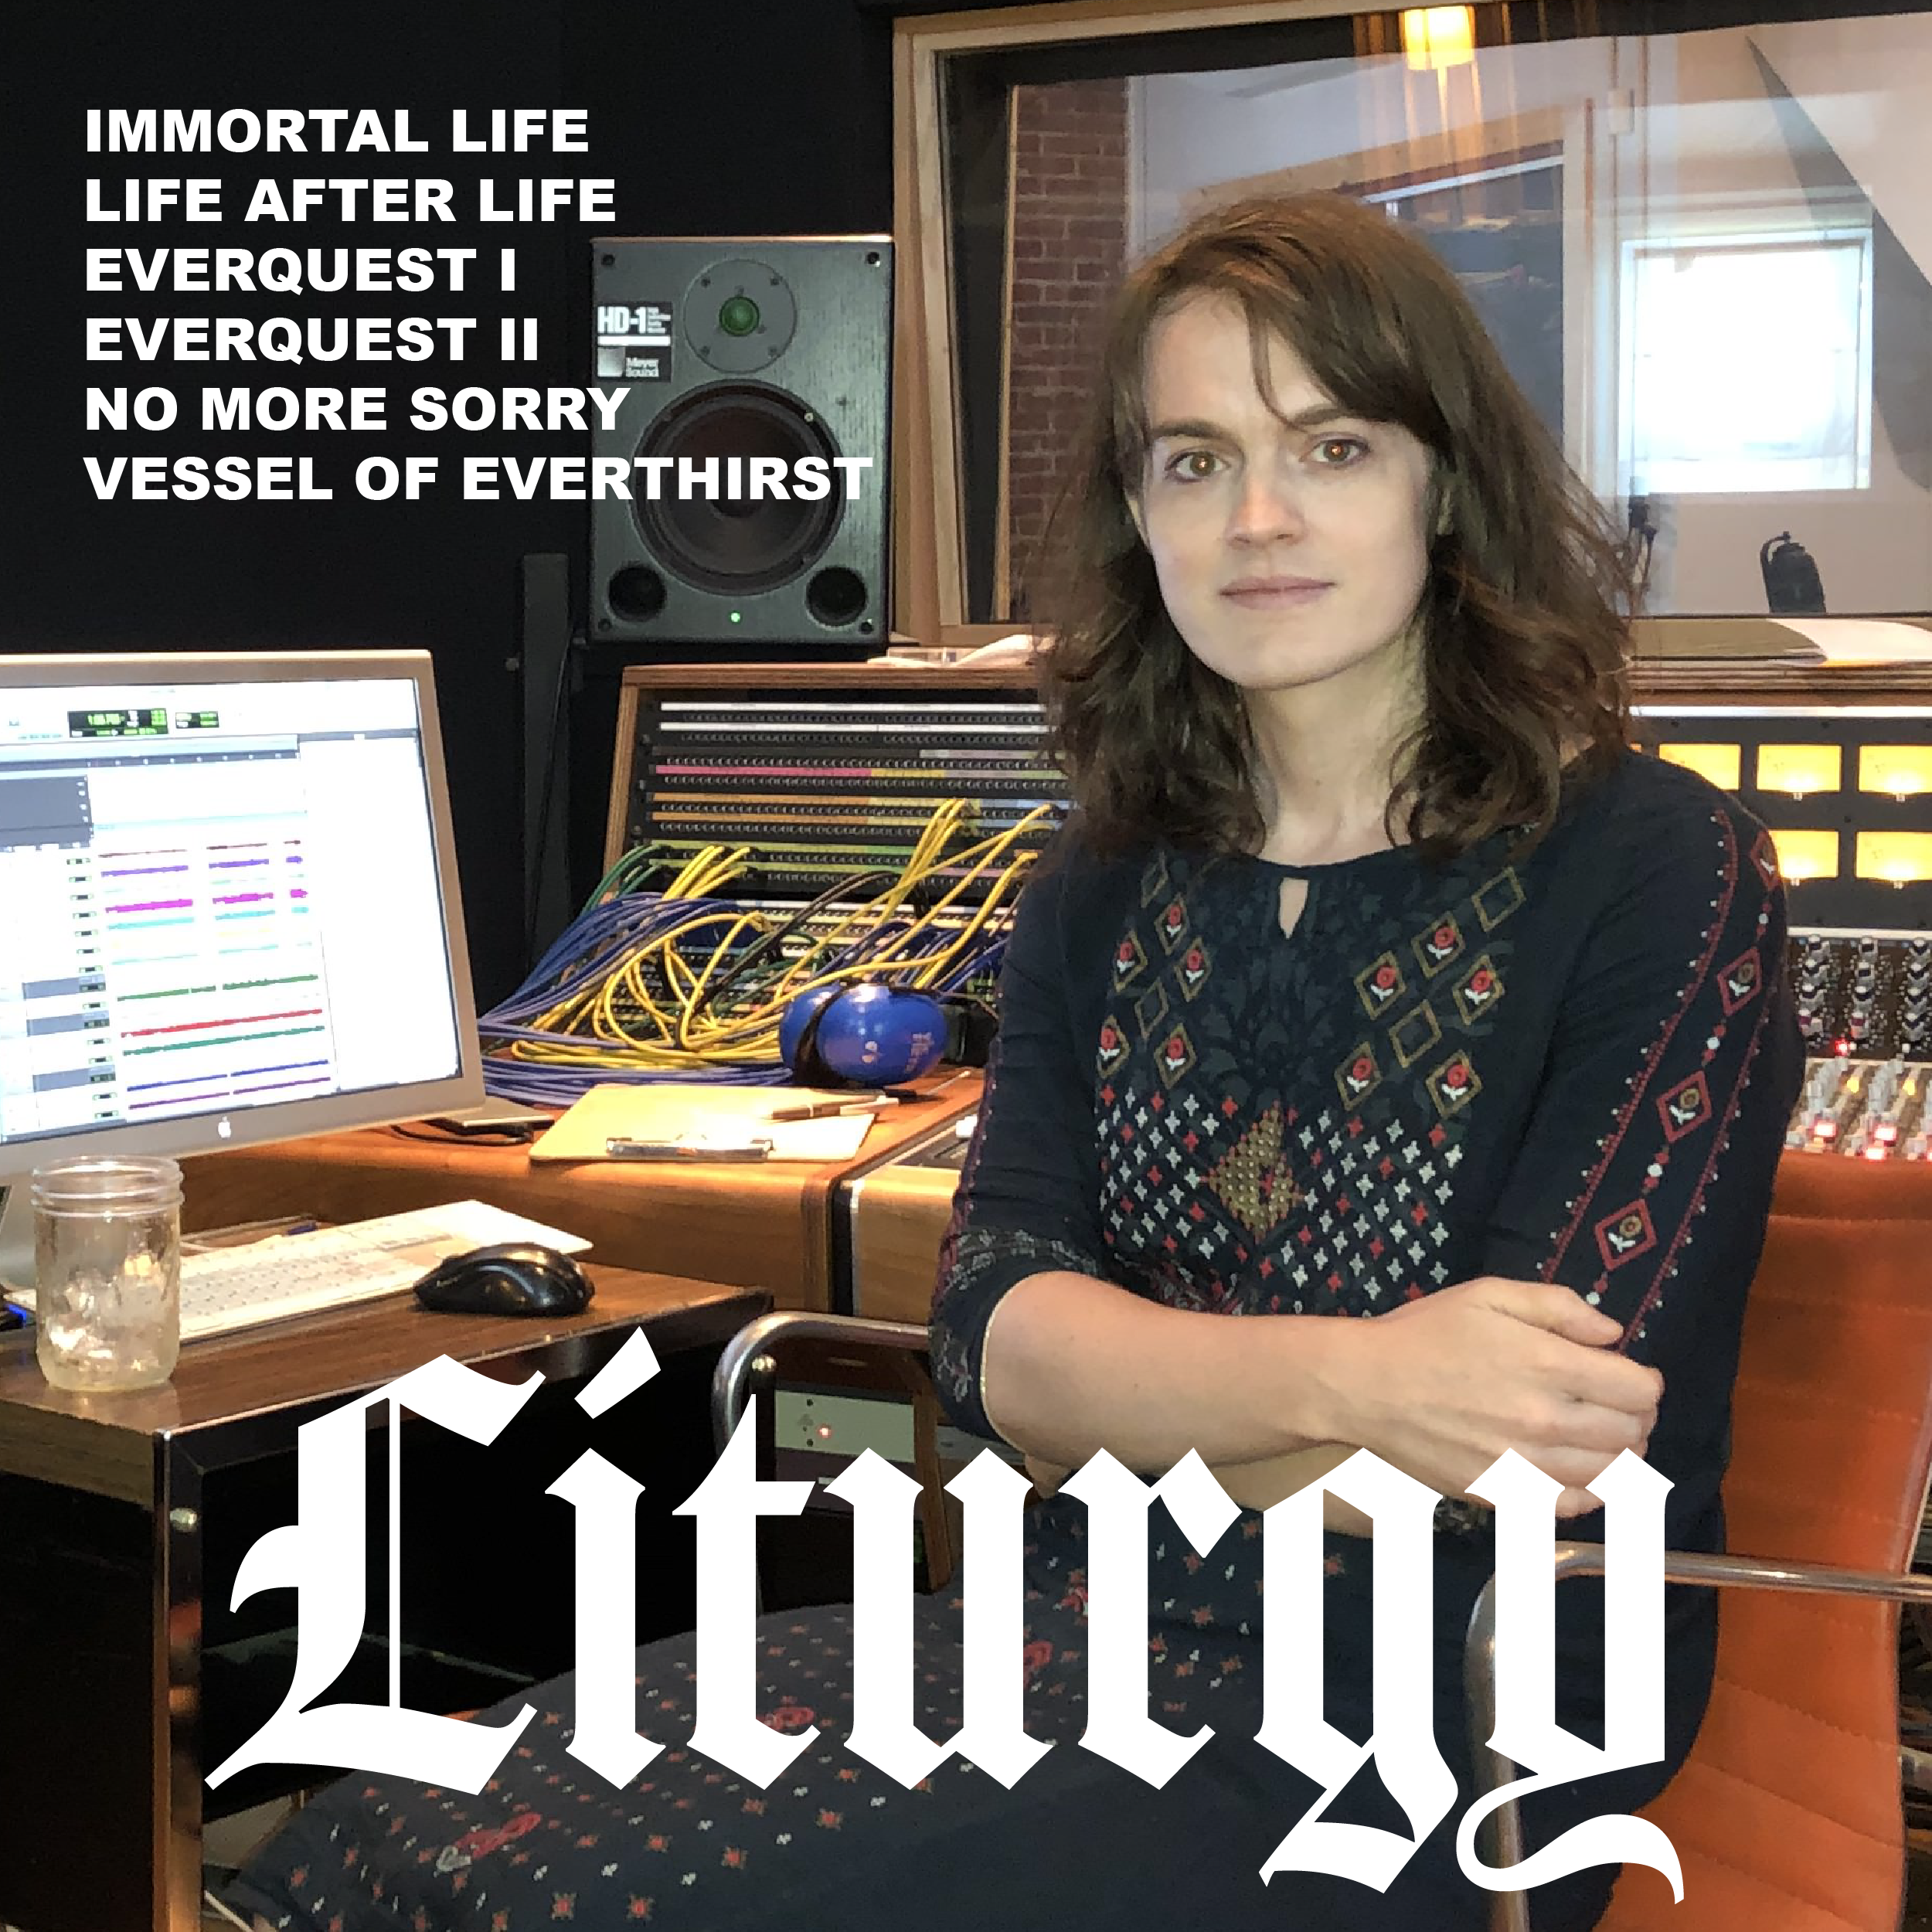   Liturgy -  Immortal Life II  [YLYLCYN]  